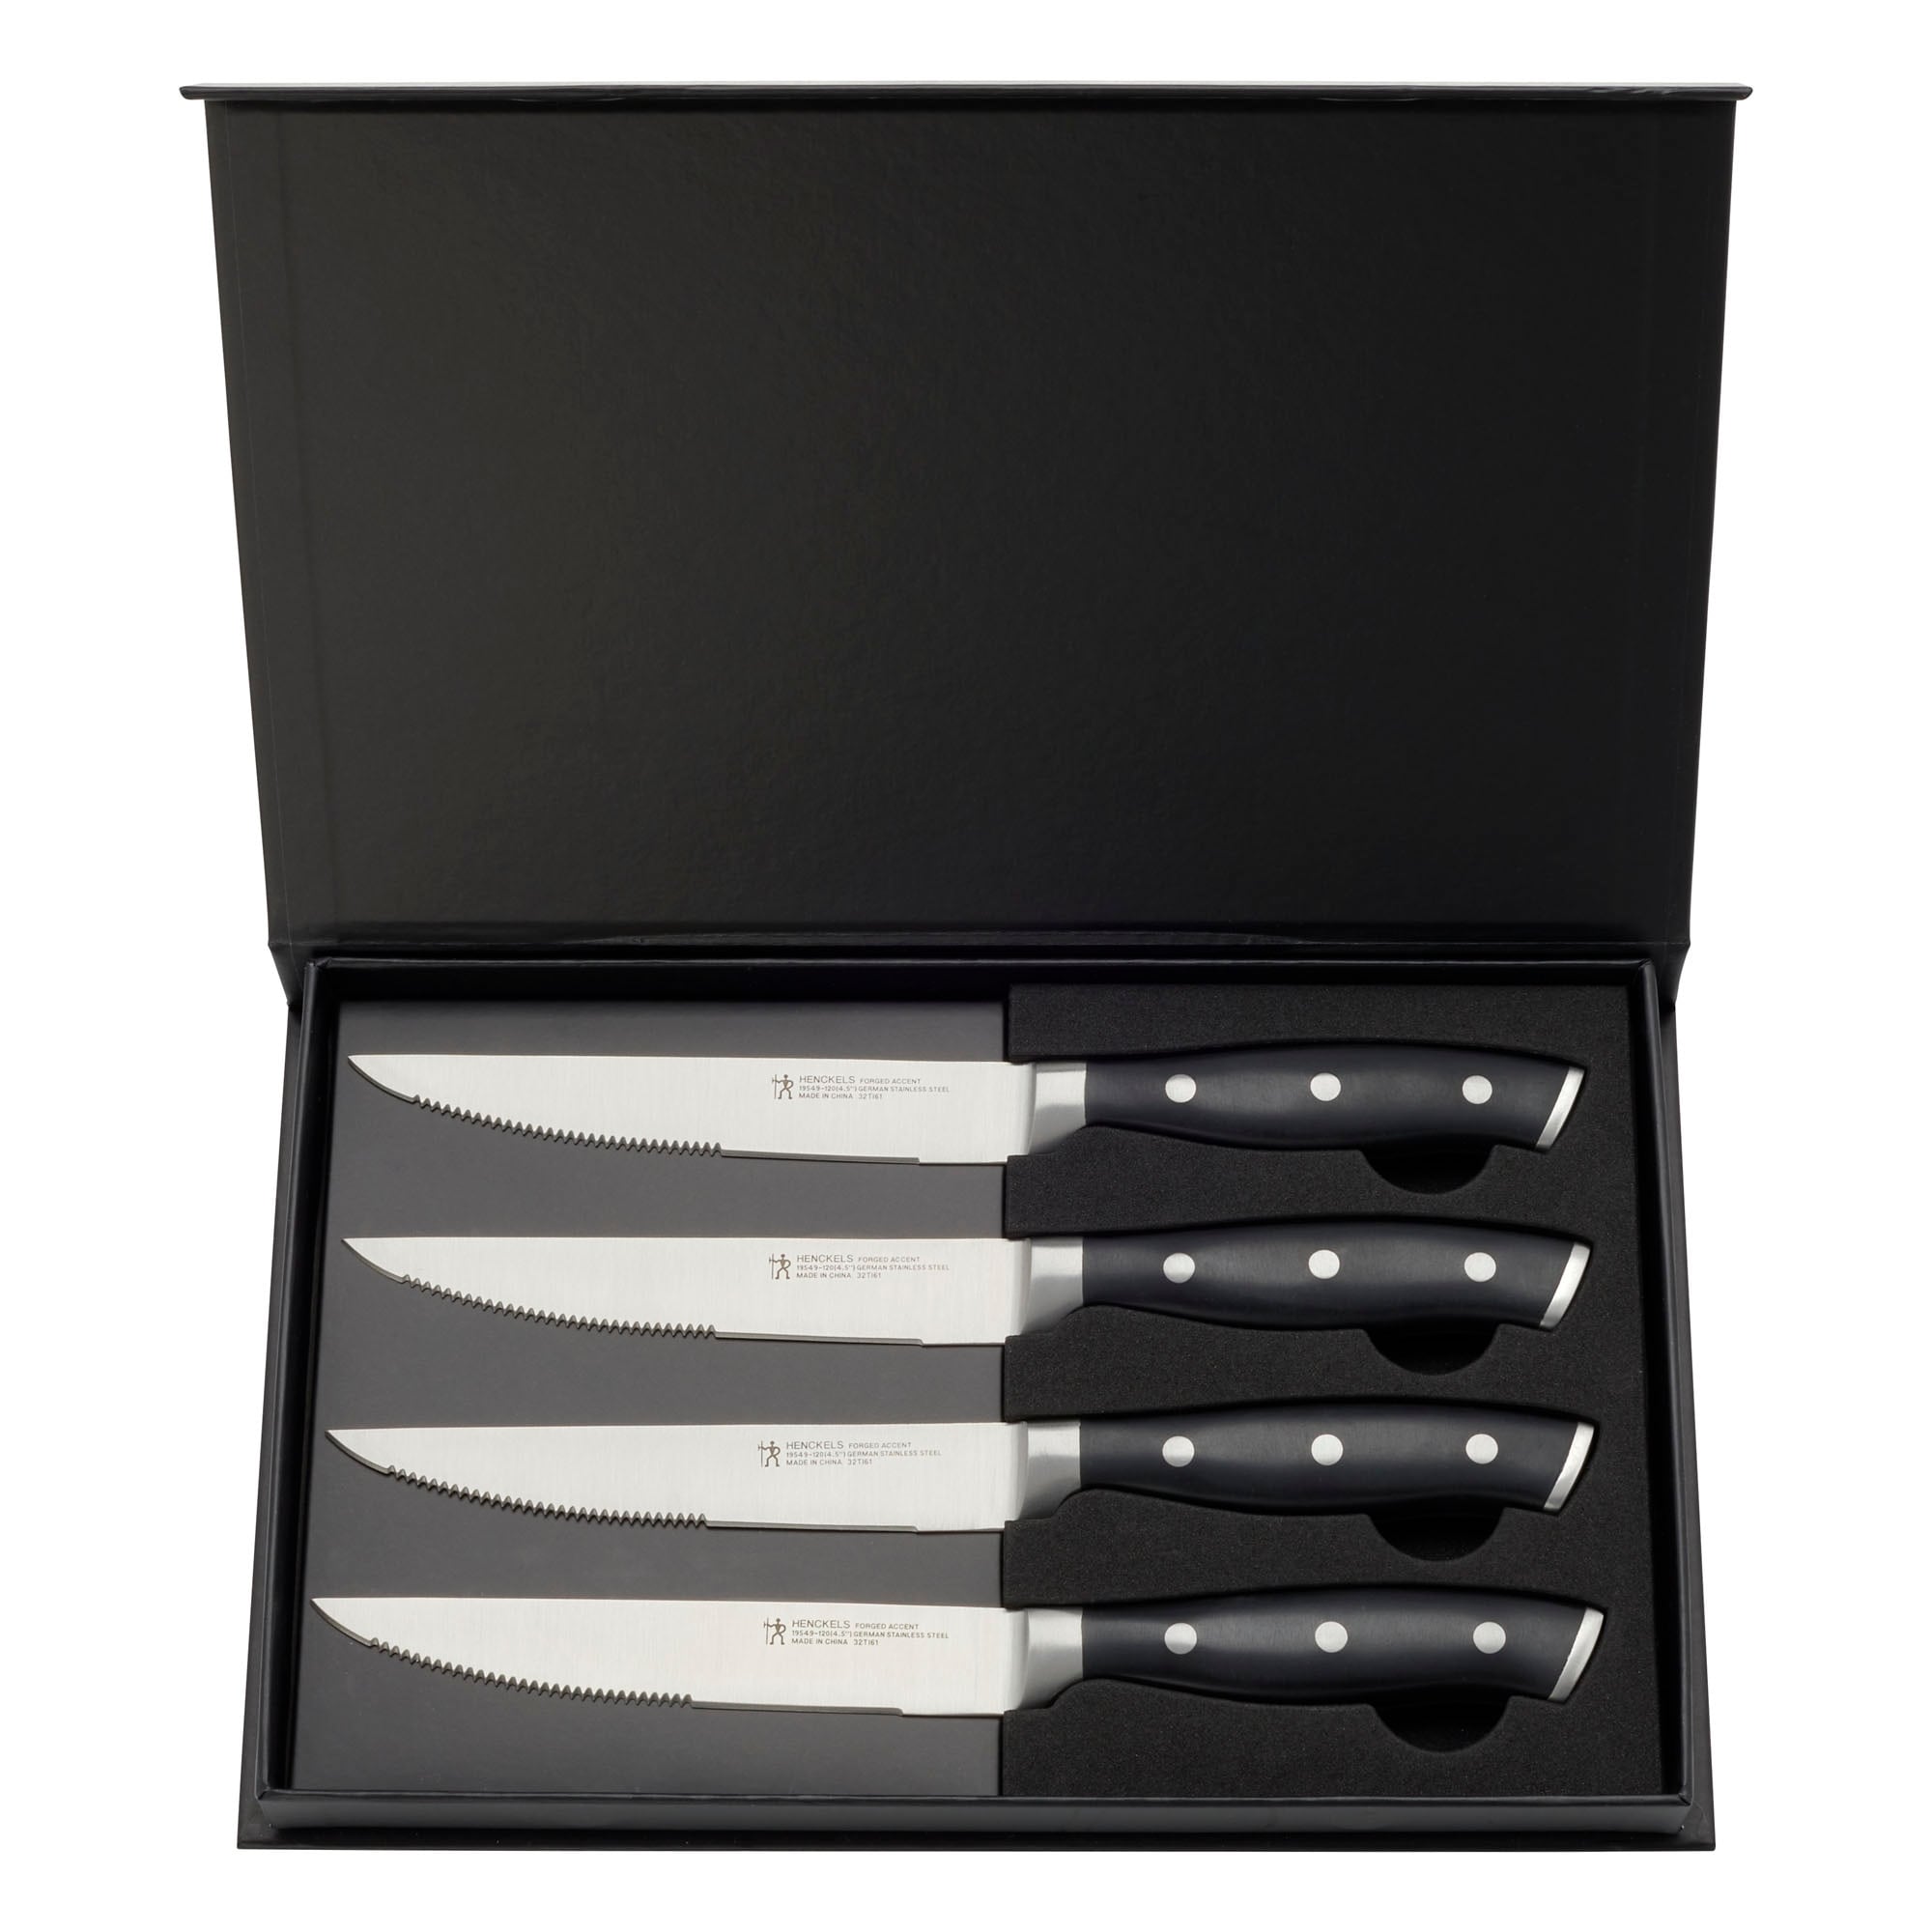 Henckels Silvercap 4-pc Steak Knife Set